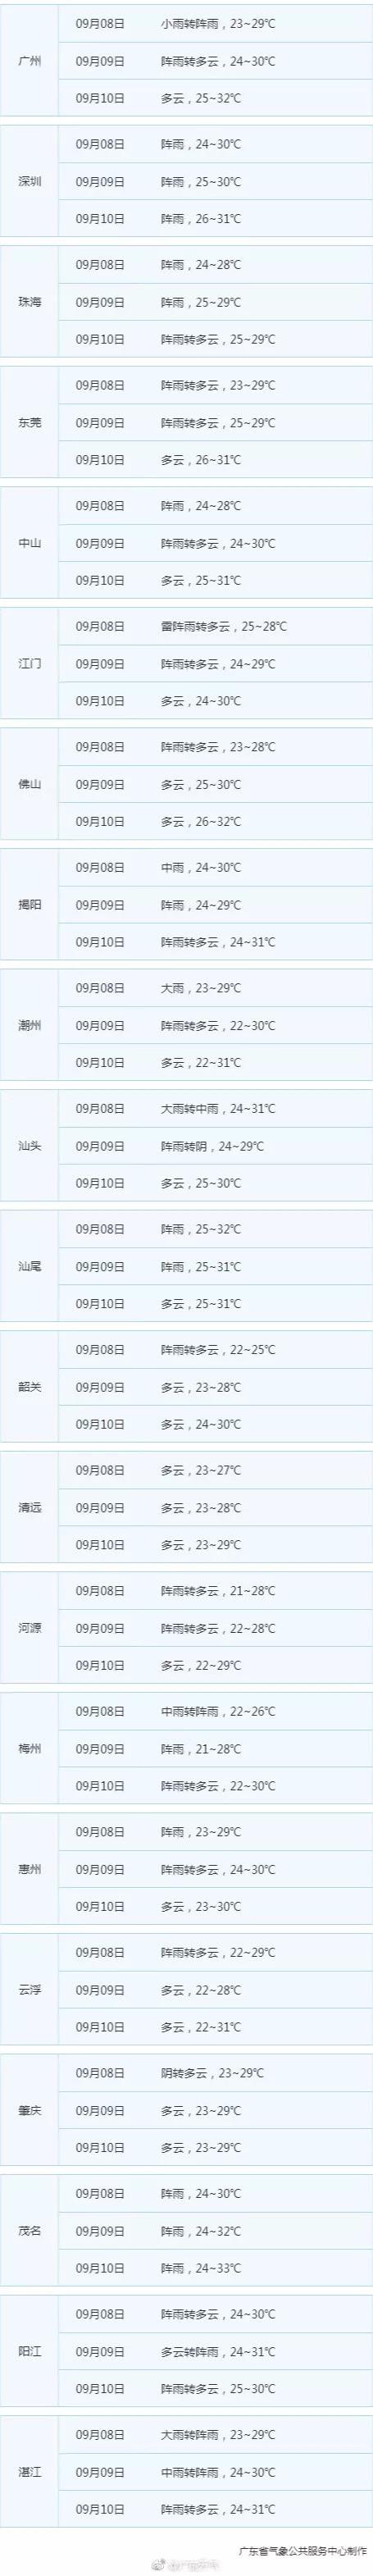 广州天气预报